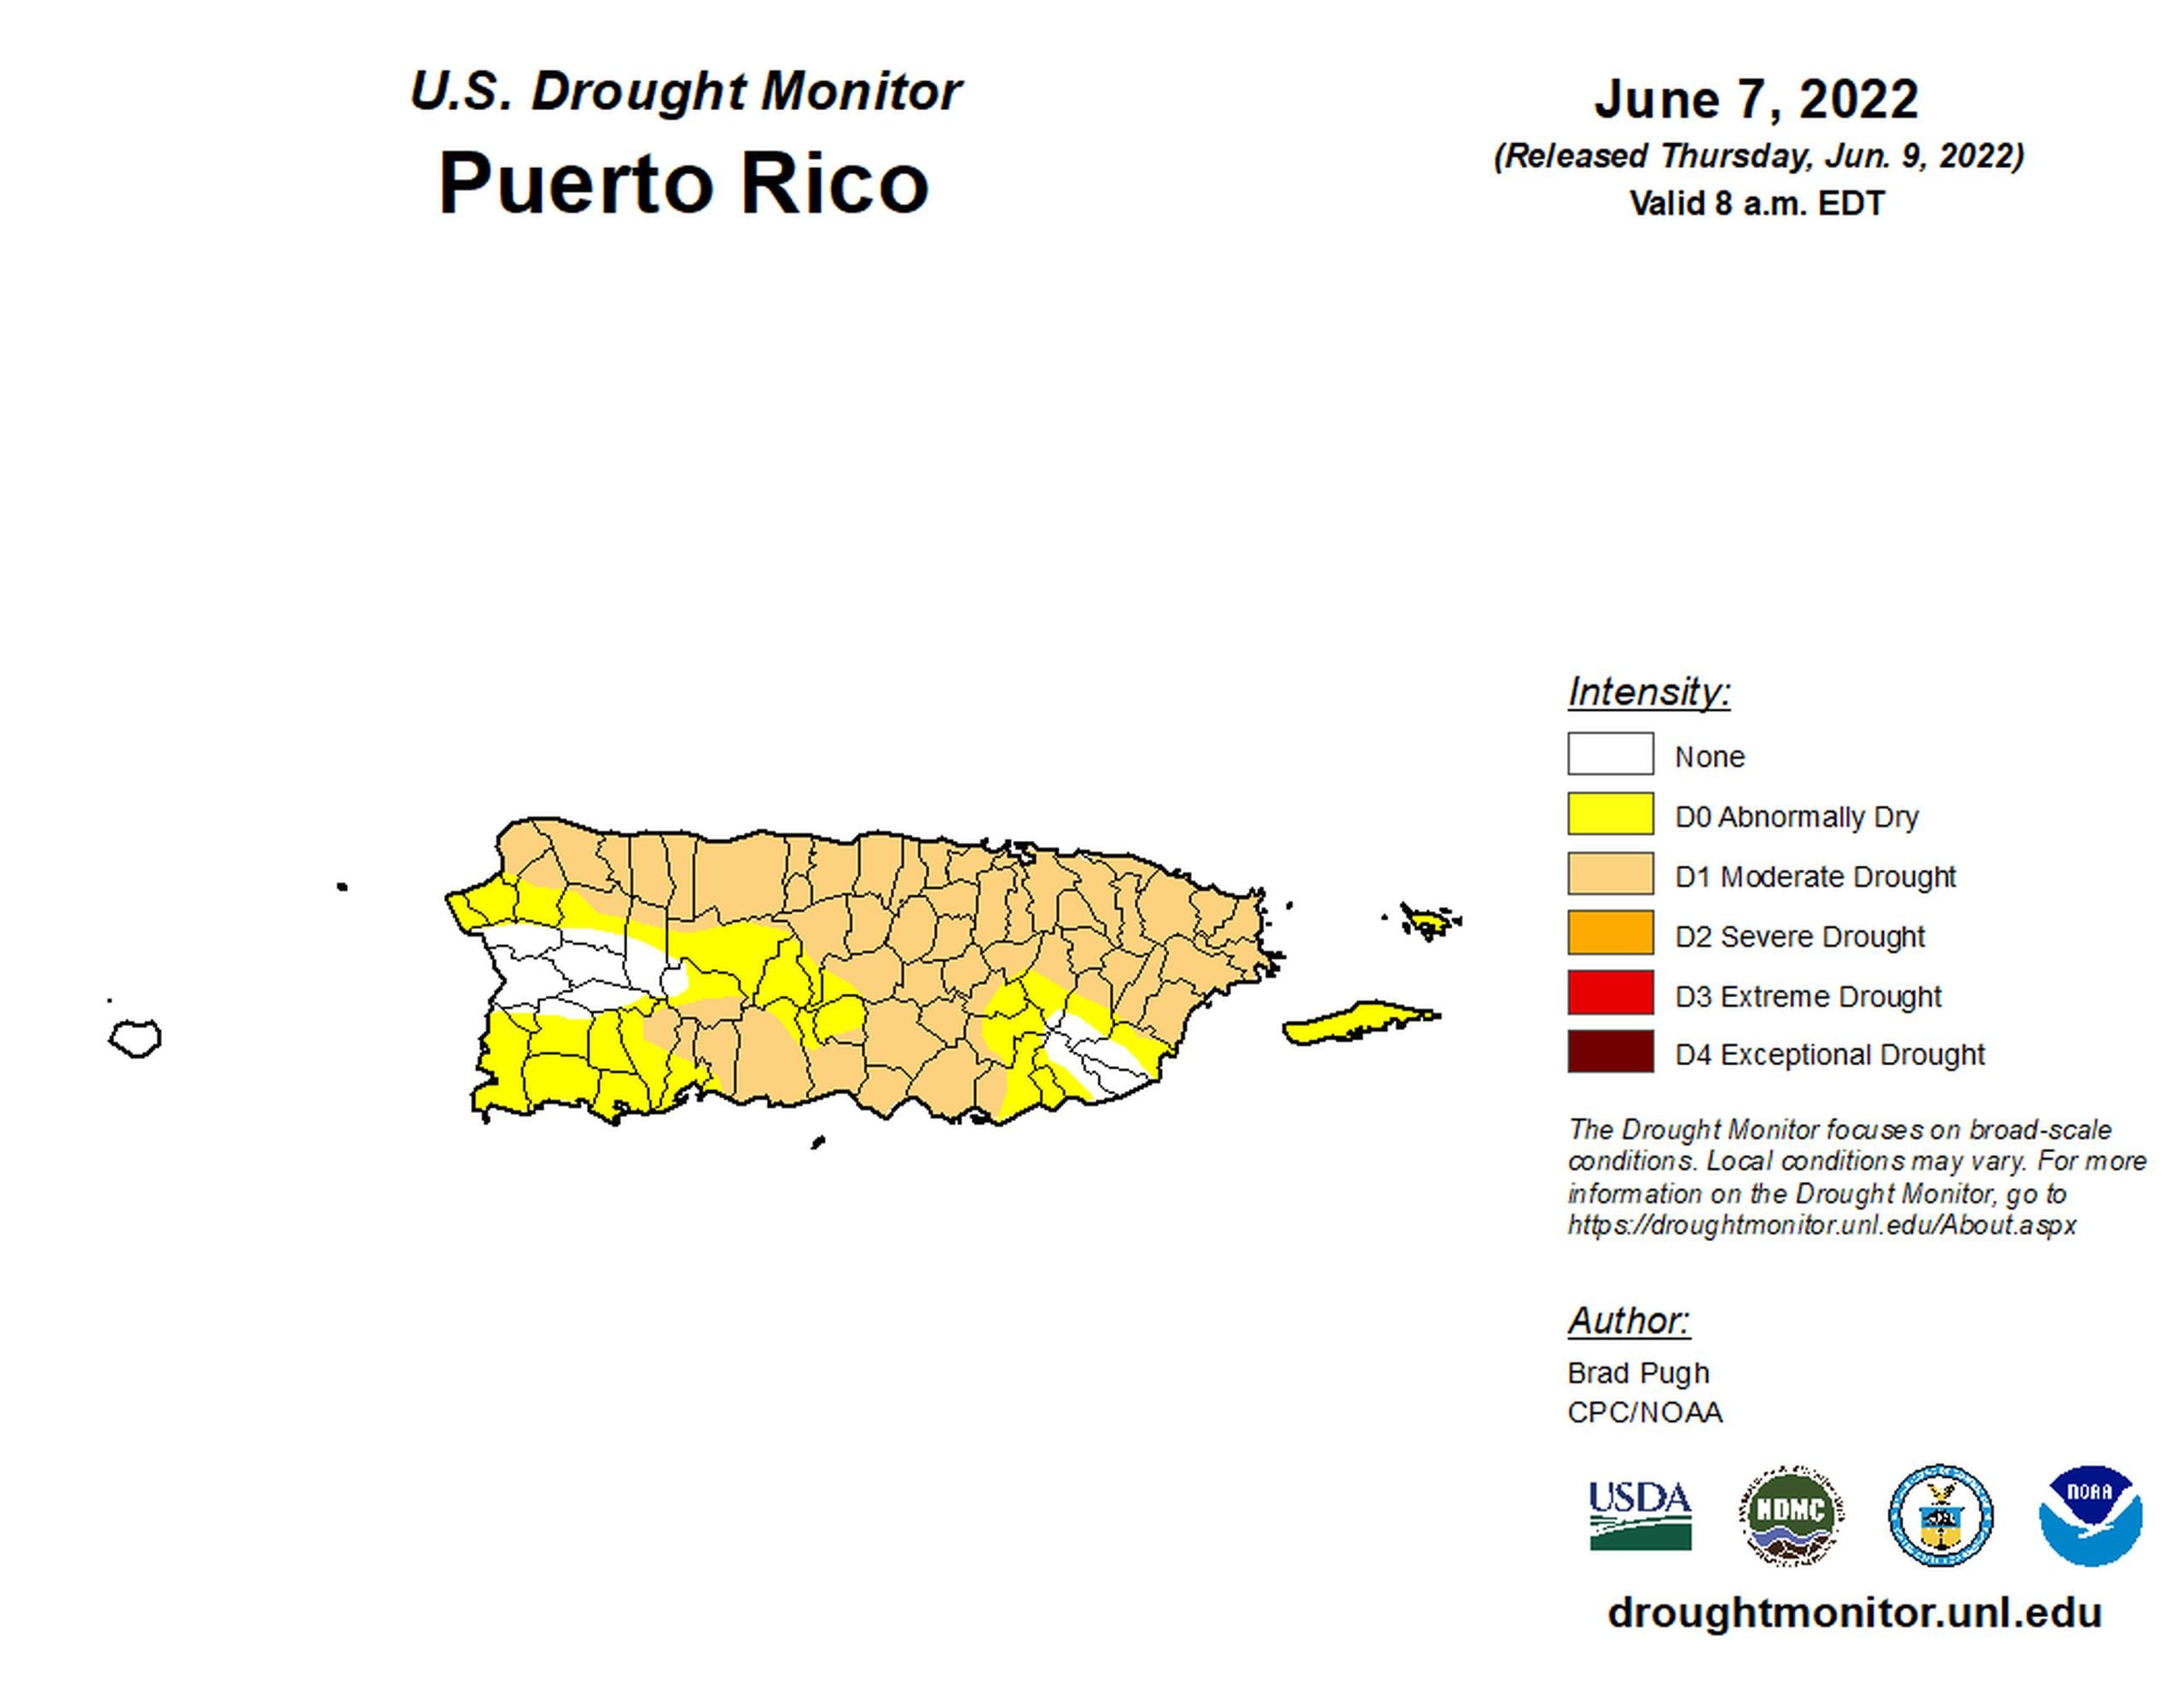 Mapa de la sequía en Puerto Rico publicado el 9 de junio de 2022 con datos del 7 de junio de 2022.